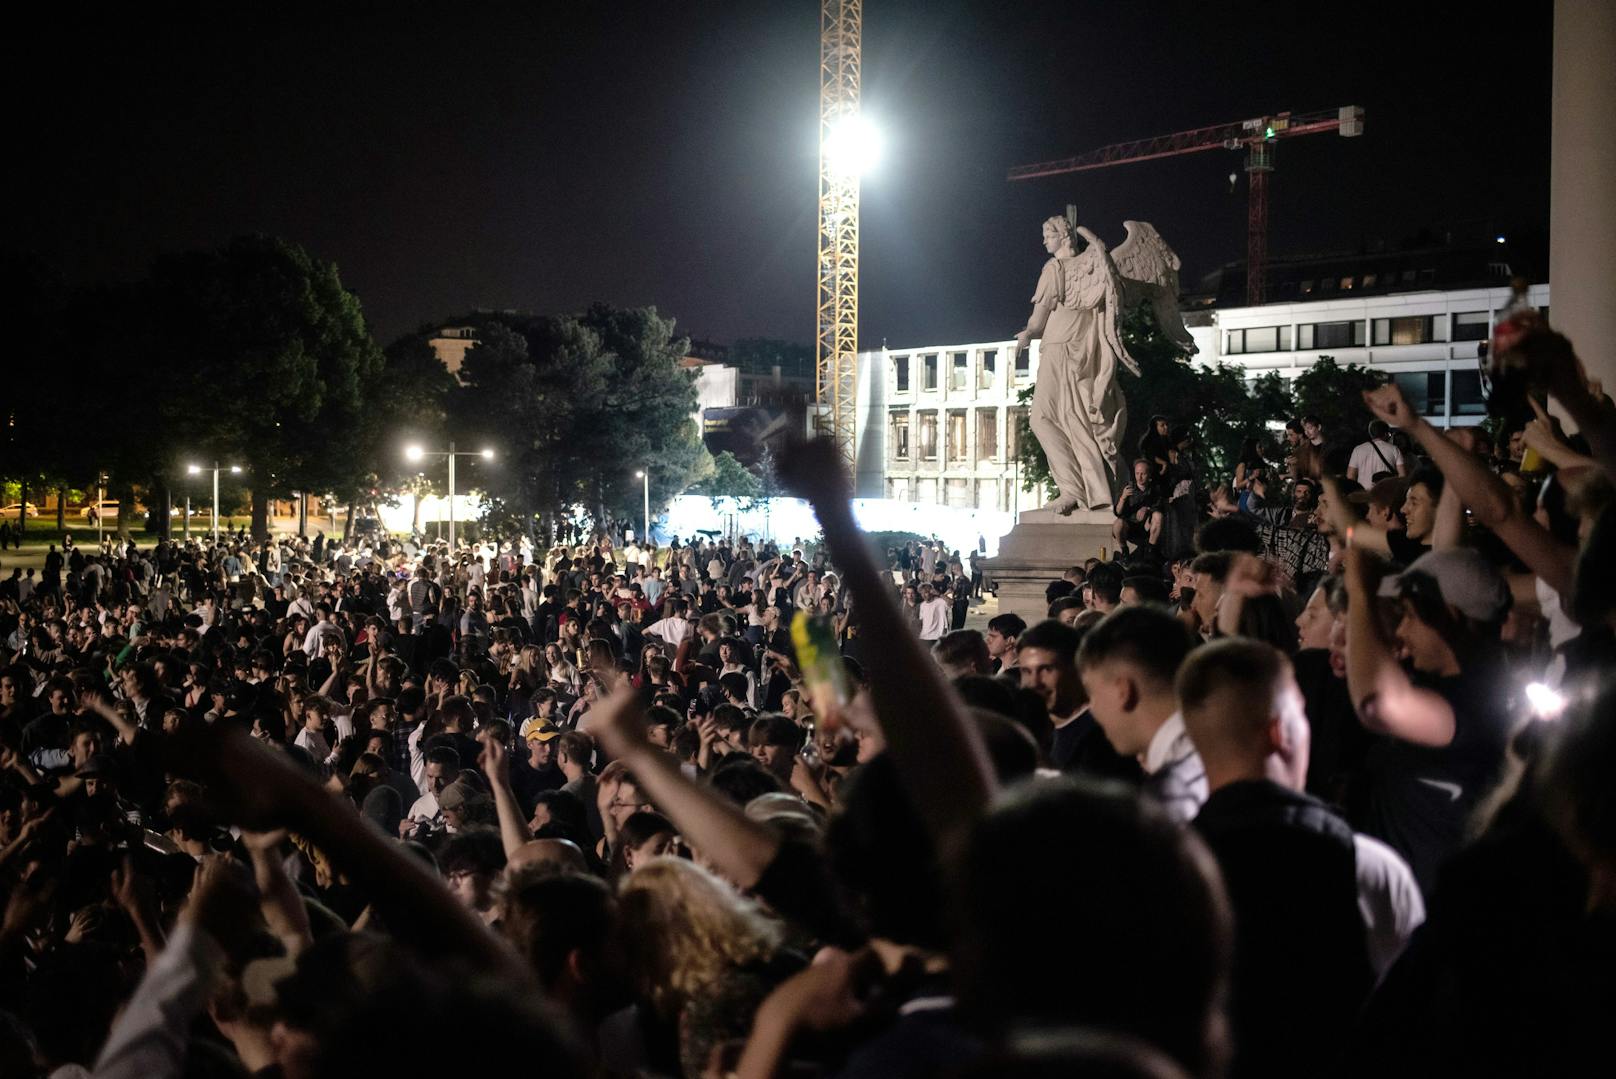 Jugendliche feierten am Wochenende am Karlsplatz. Es kam zu Ausschreitungen. Die Polizei verhängte ein Platzverbot.